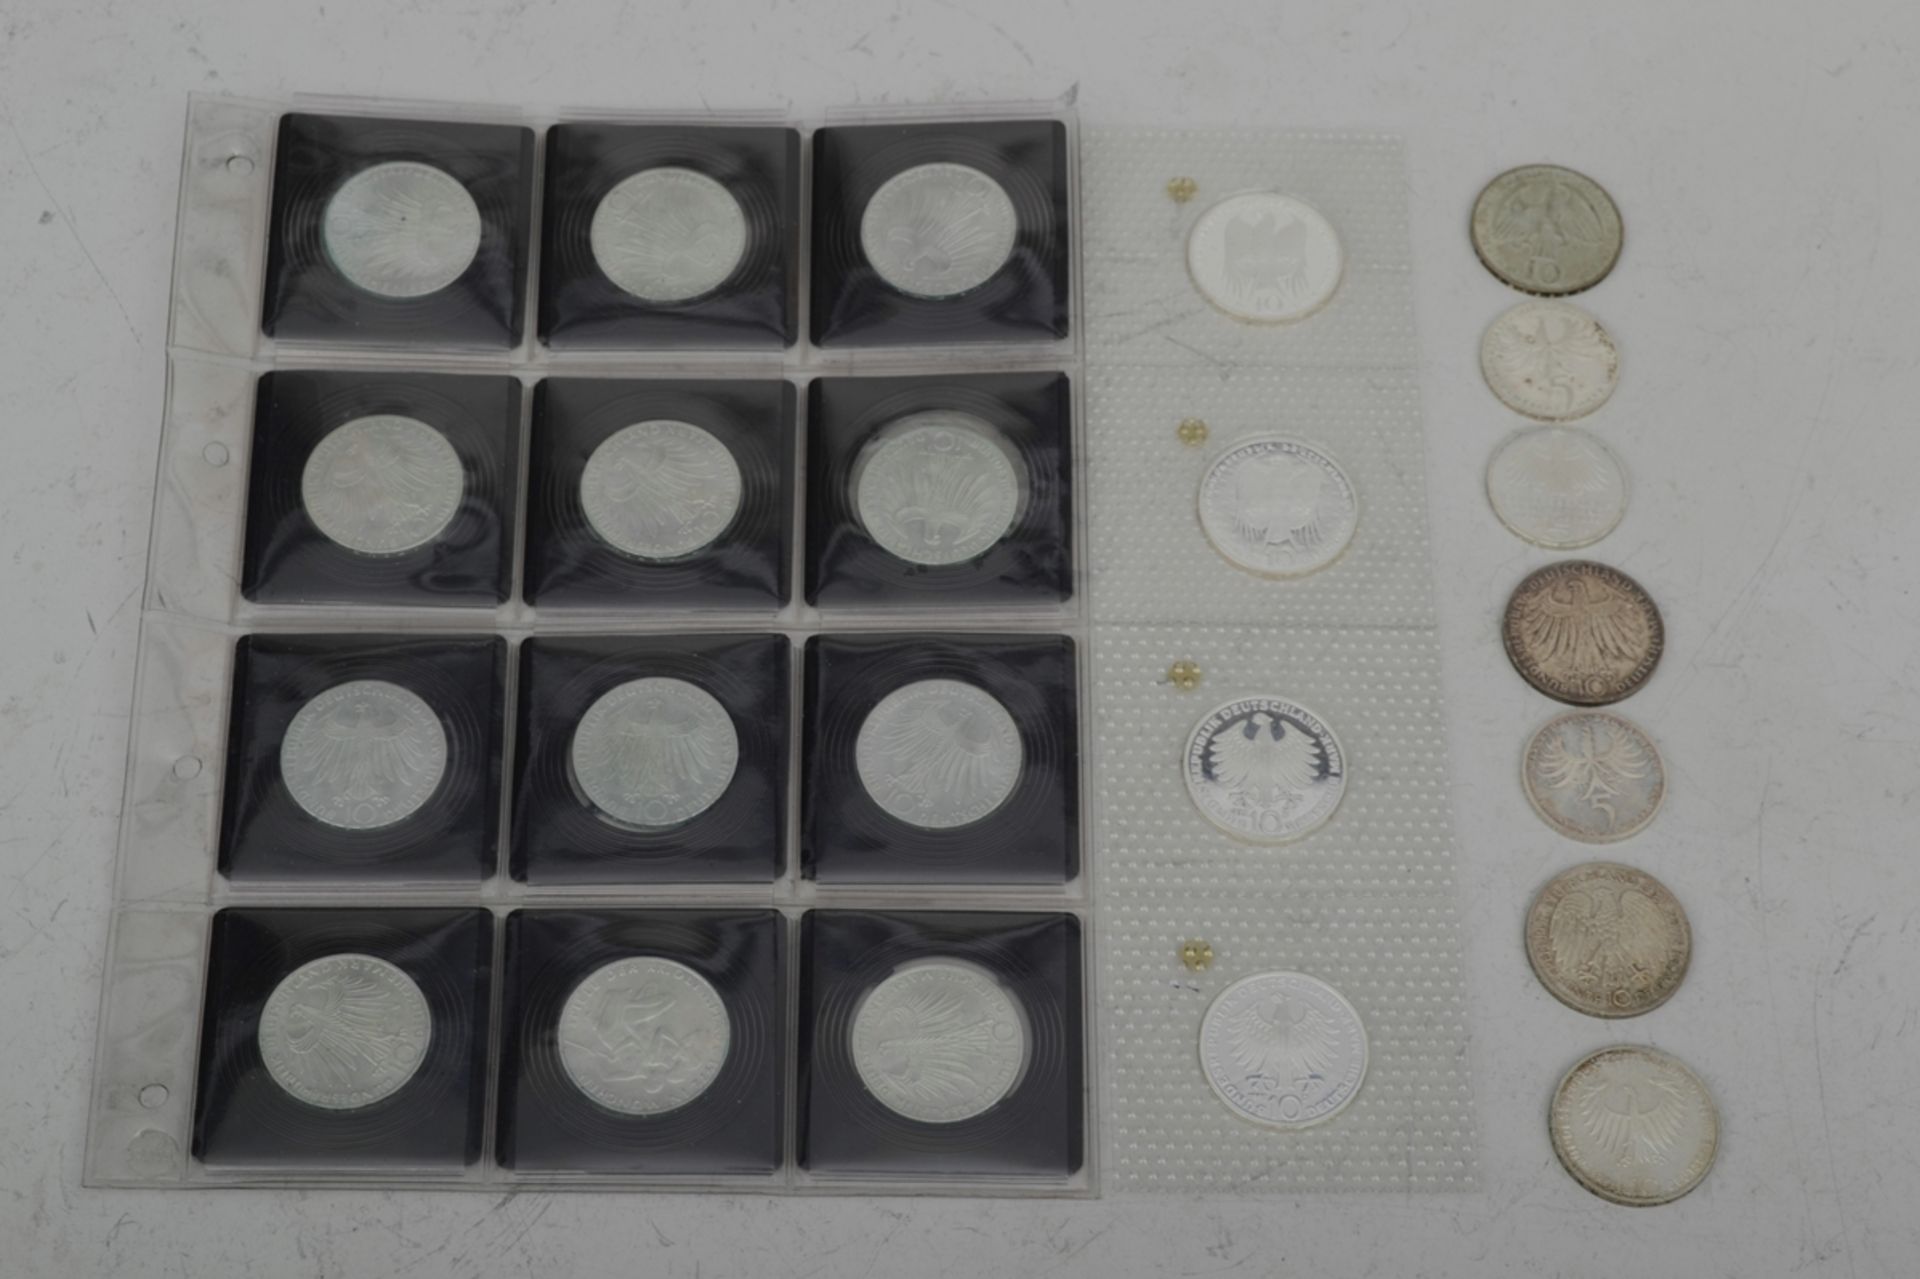 110tlg. Sammlung von 41 x 5 DM und 69 x 10 DM Münzen, teilweise Silber, zusammen ca. 895,- DM. Vers - Bild 9 aus 9